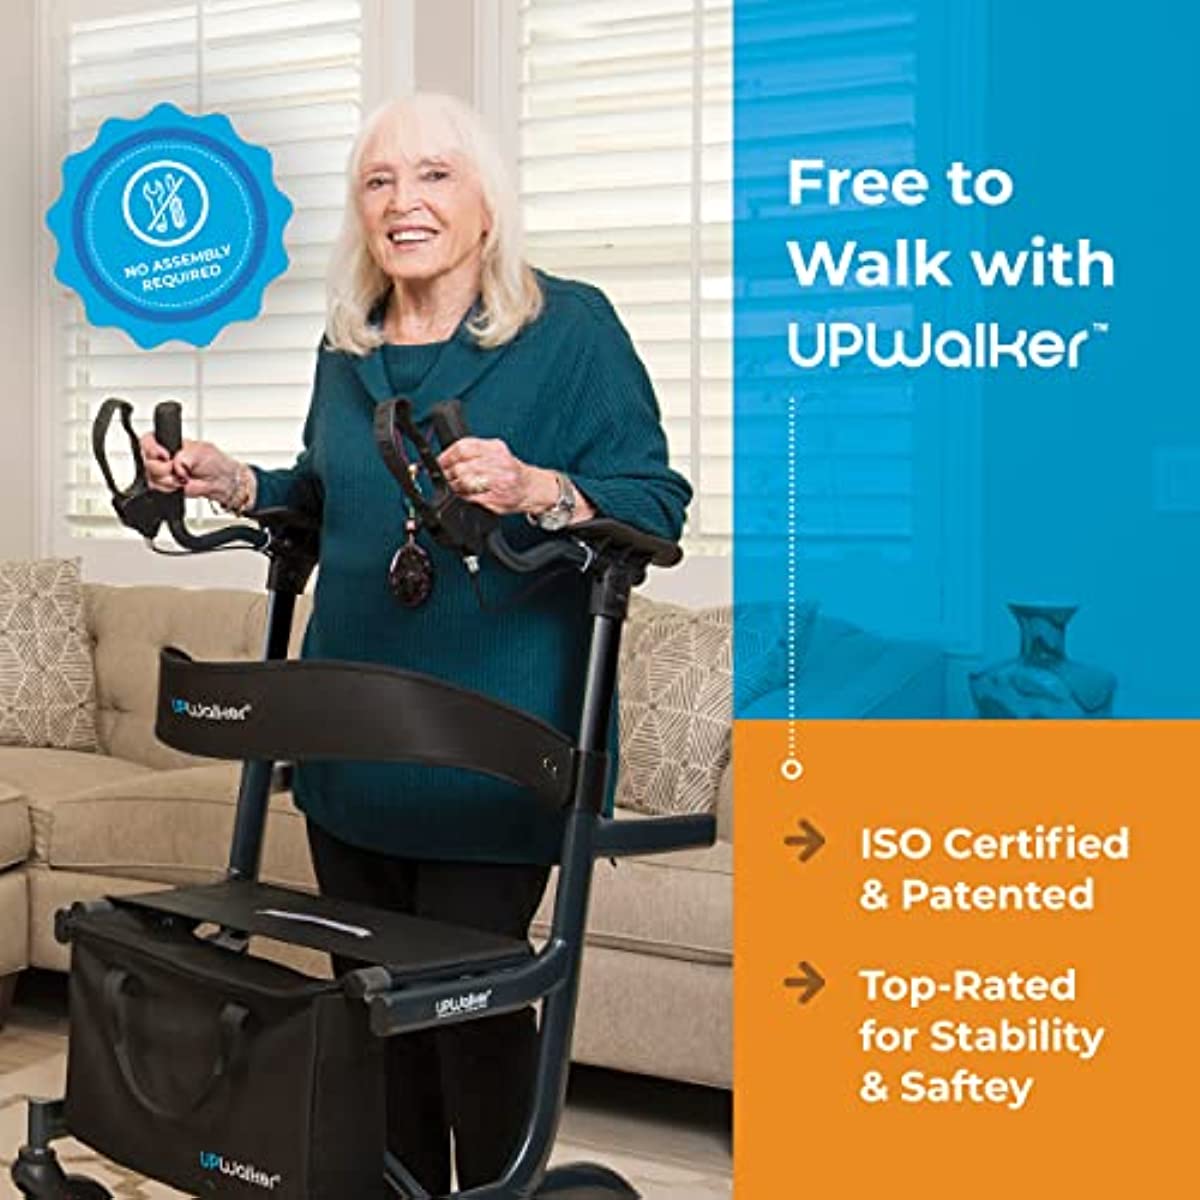 UPWalker Lite The Original Upright Walker – Fully Assembled ISO Certified Adjustable Stand-Up Rollator Walker with Seat, Armrest, Backrest for Seniors